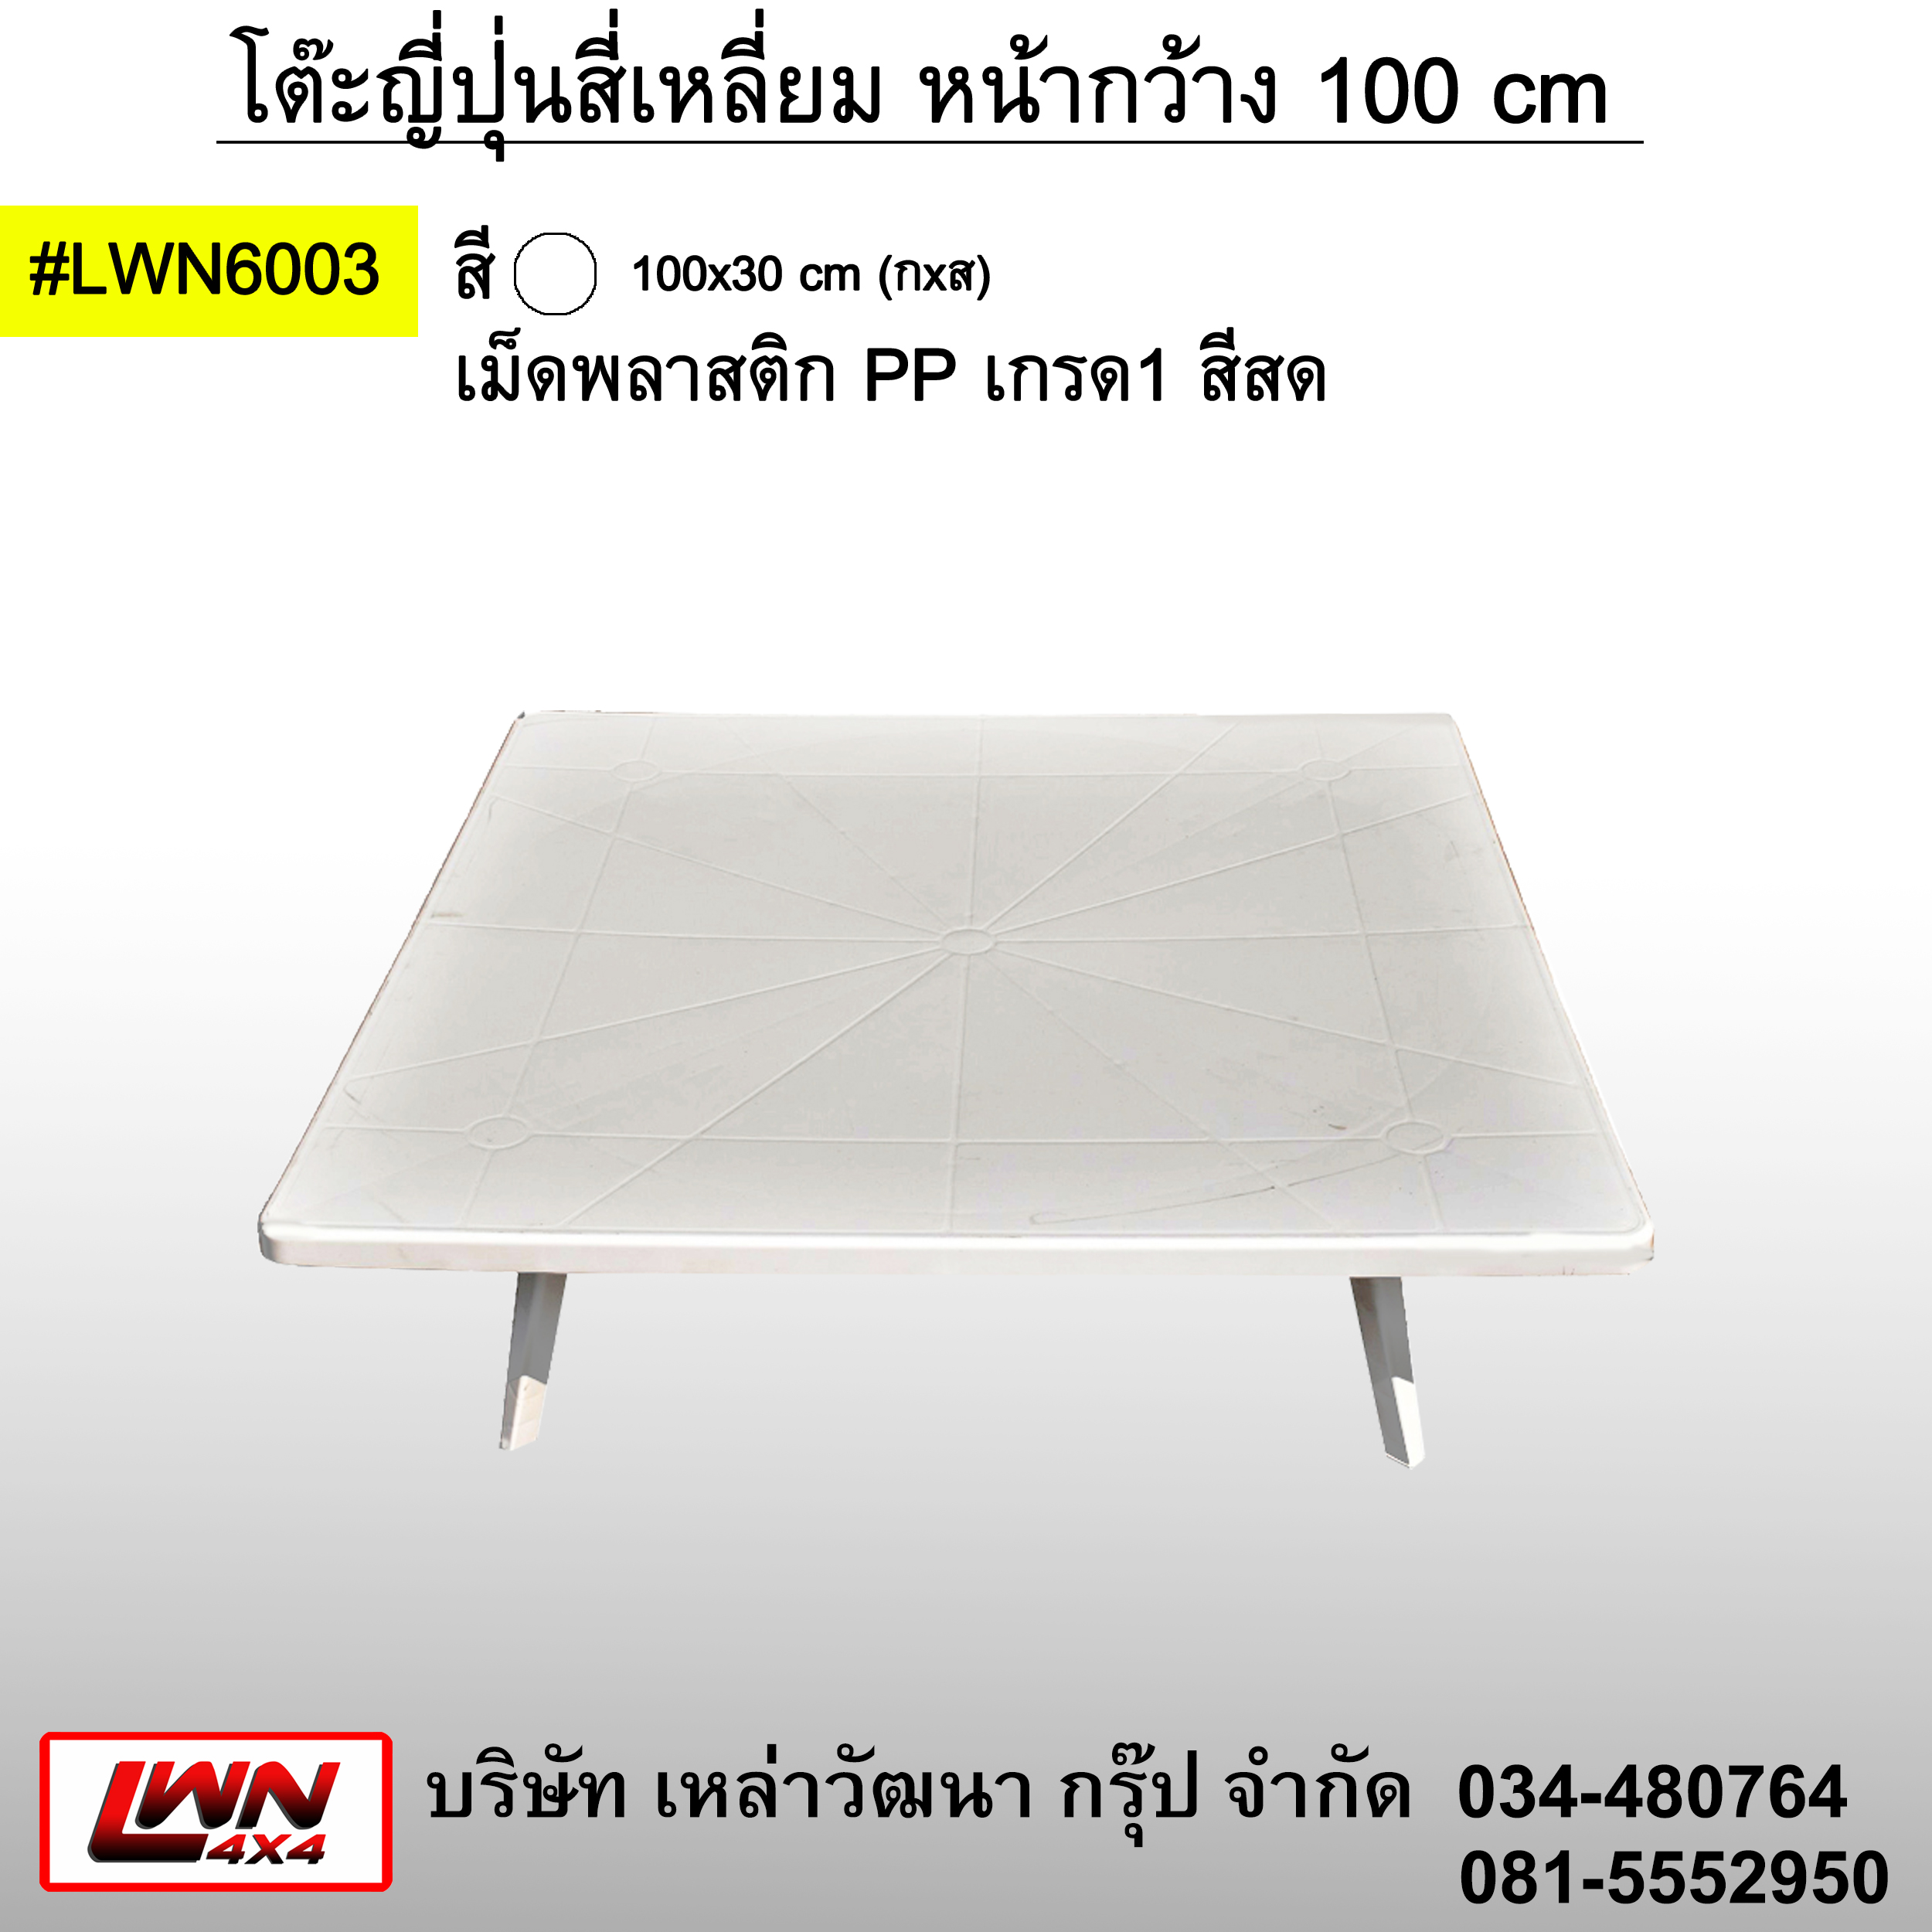 Low table width 100x100cm #LWN6003